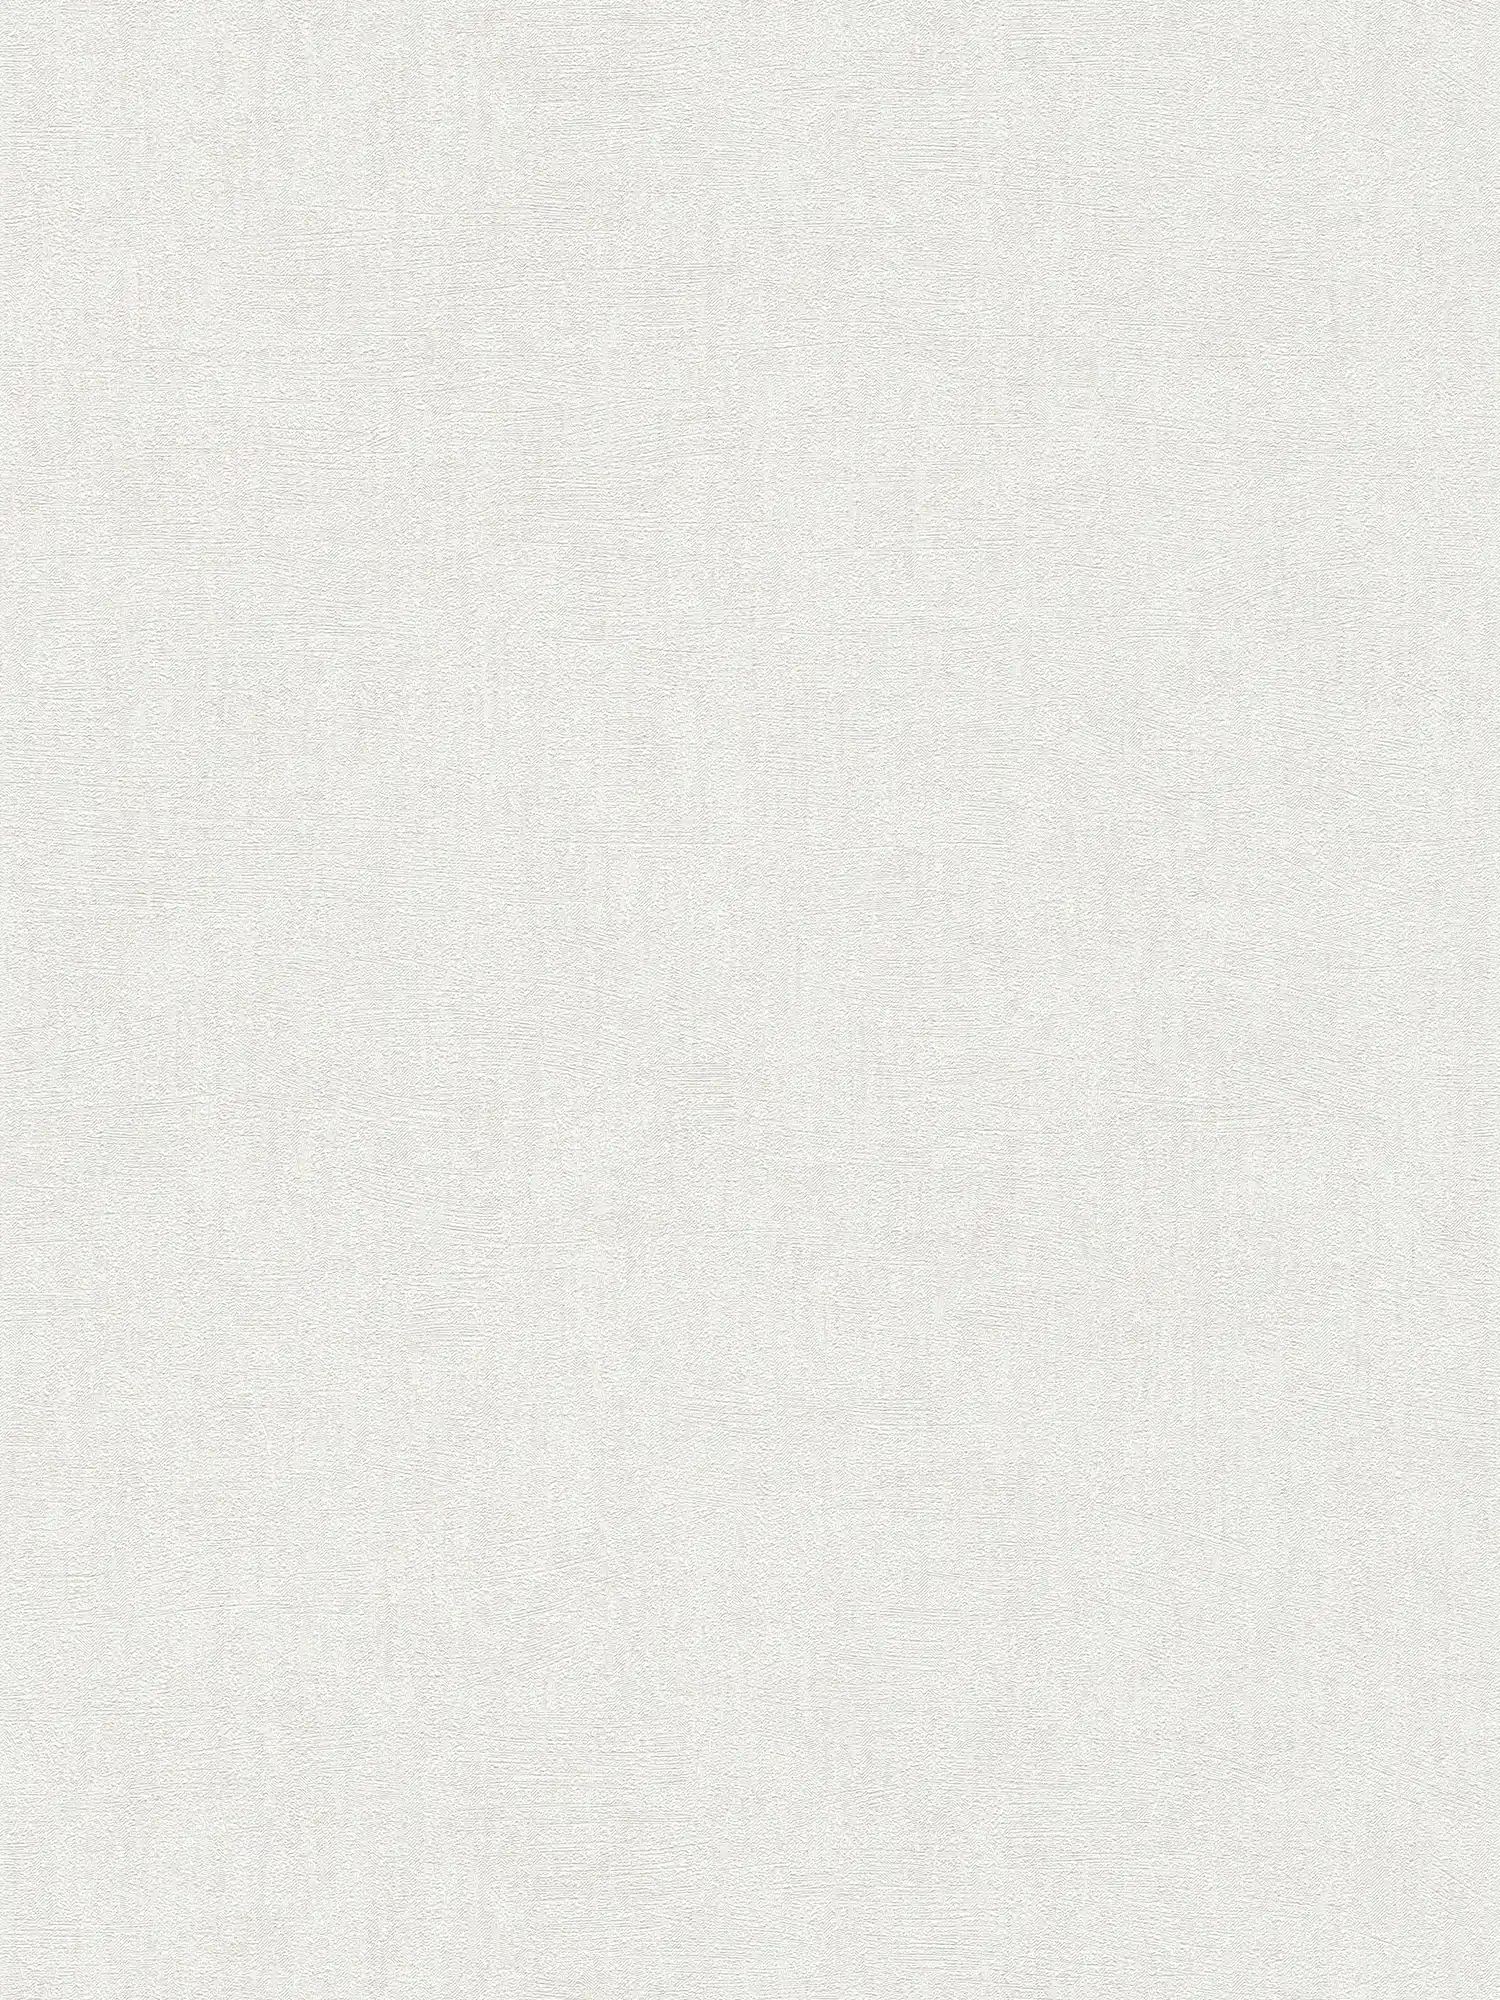 Carta da parati avorio con effetto lucido - beige, crema, metallizzato
